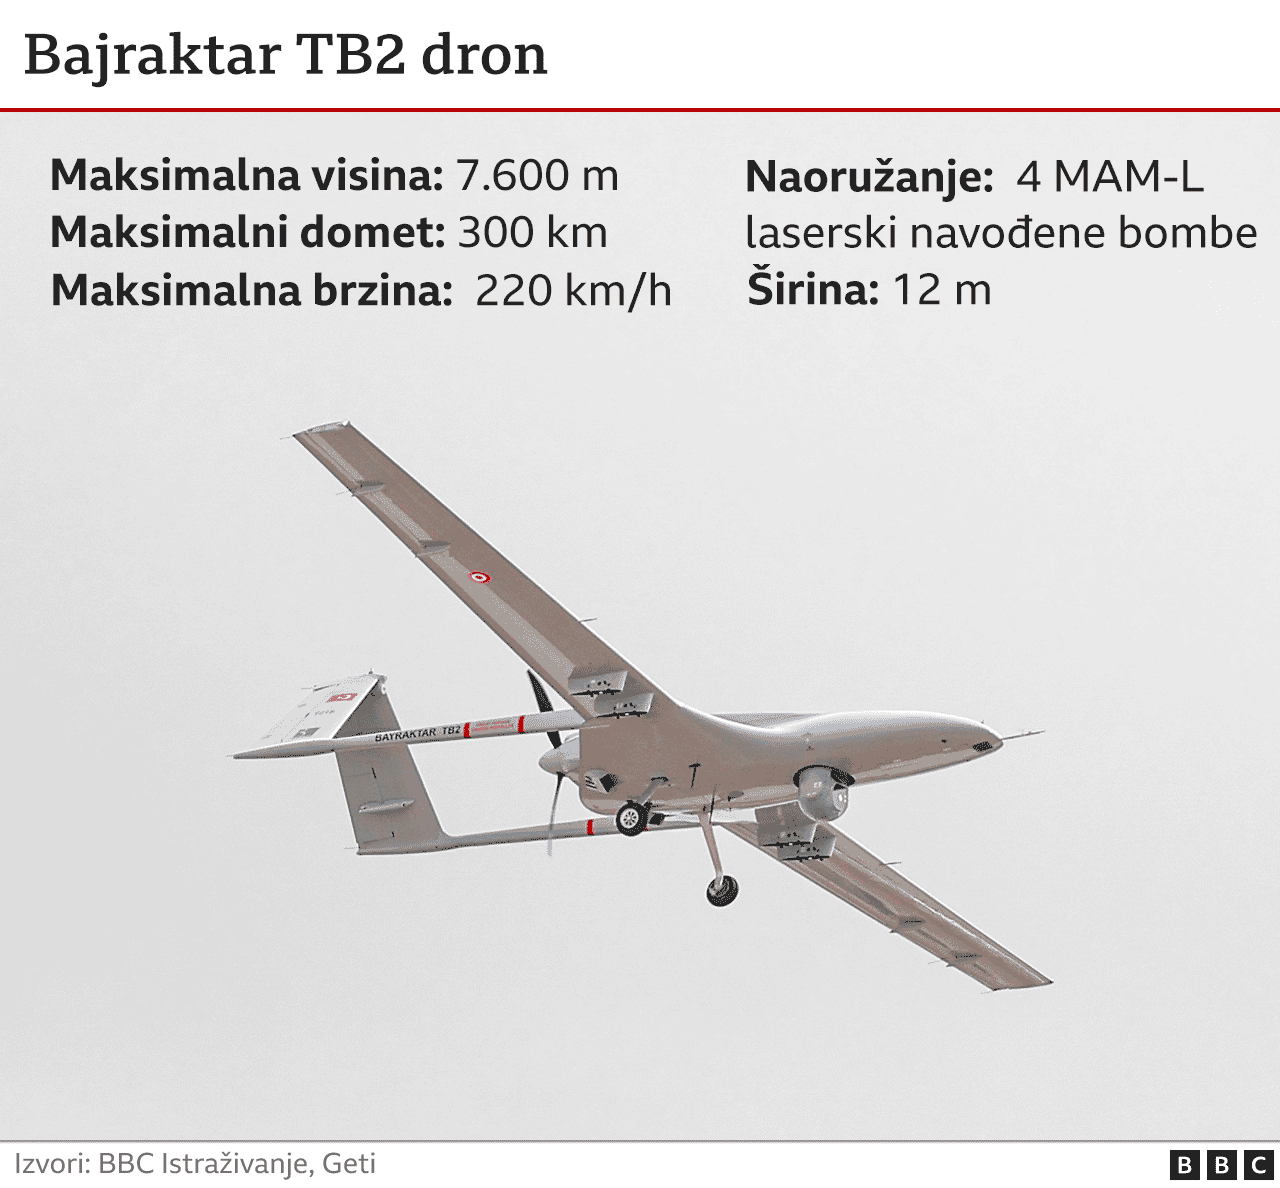 Barjaktar TB2 dron